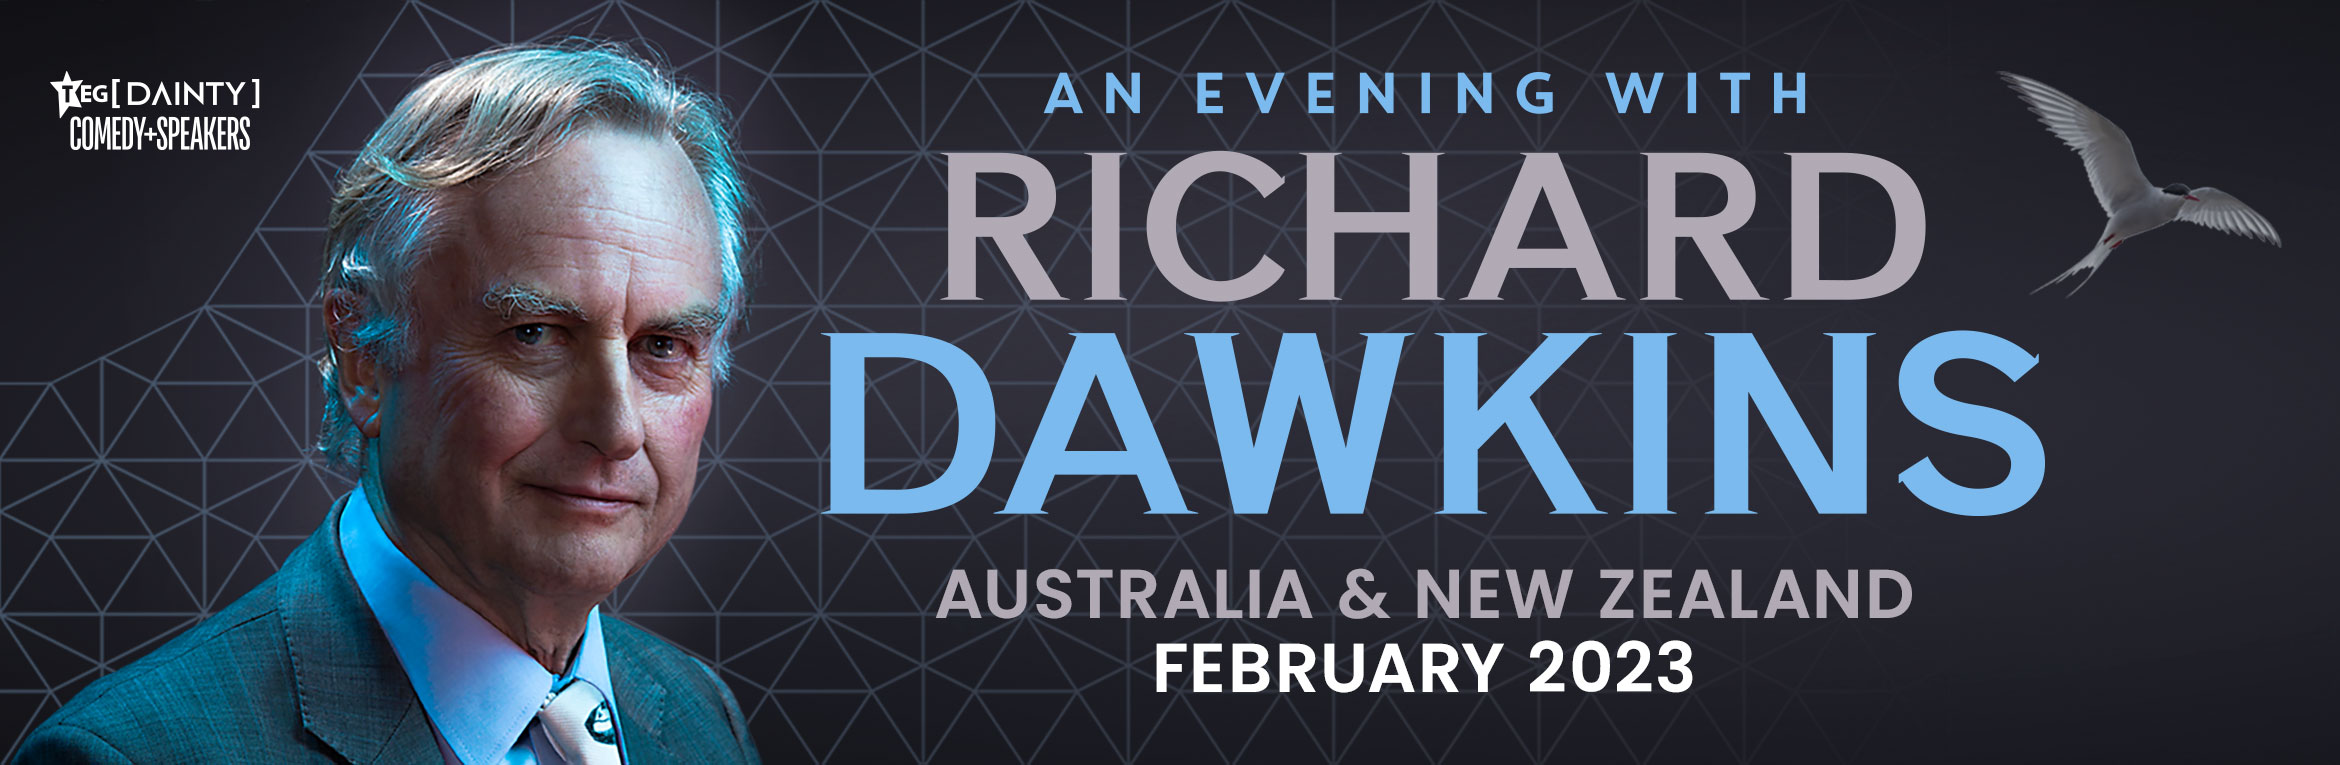 richard dawkins tour 2023 uk